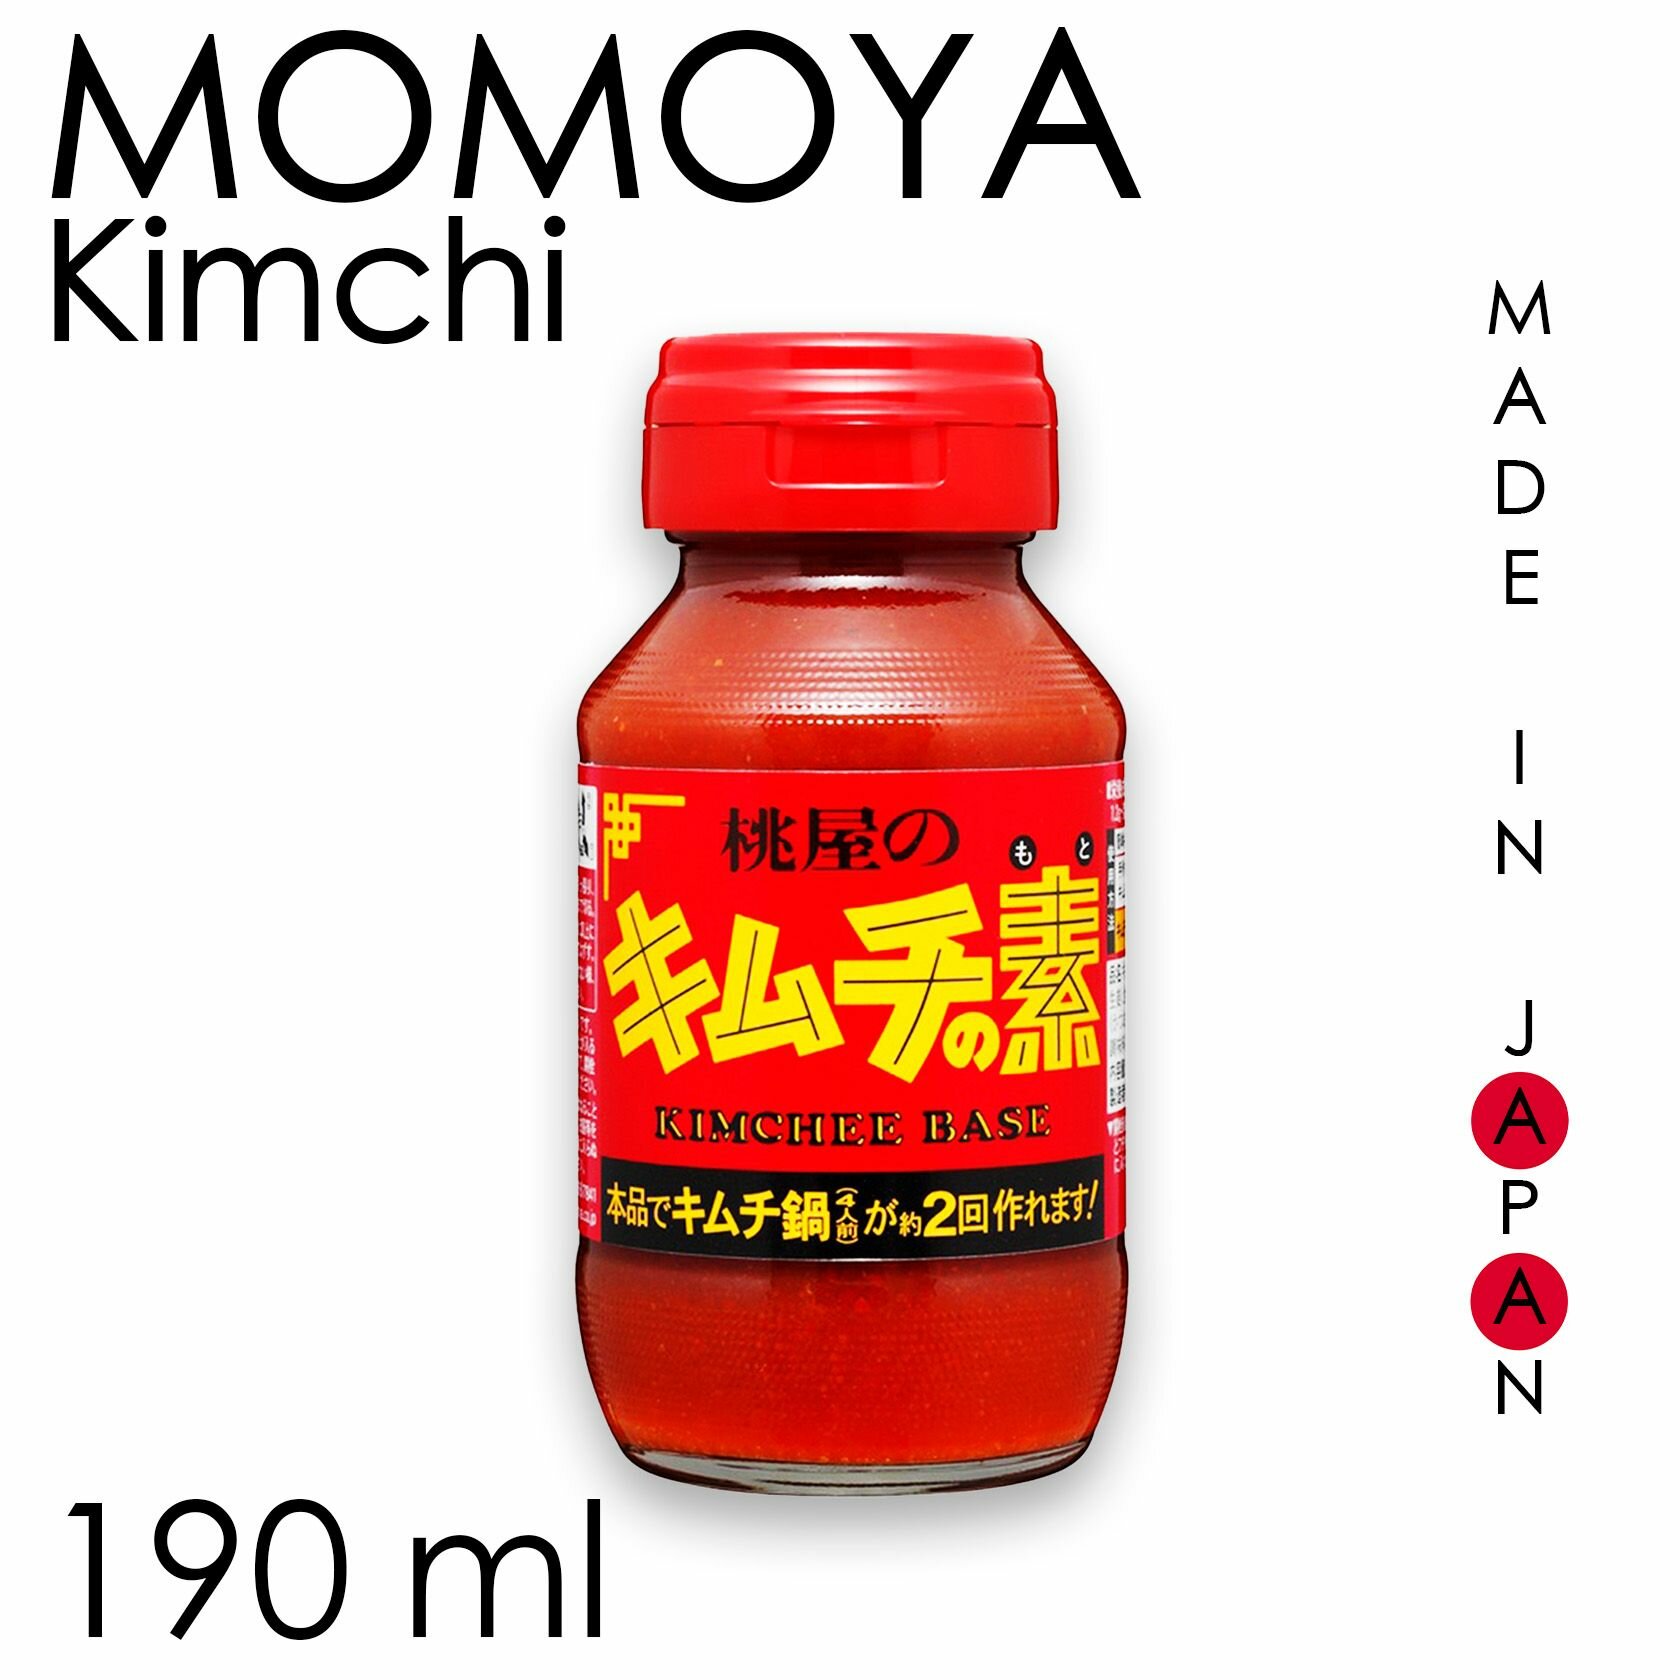 Традиционный соус кимчи MOMOYA, Япония 190 мл